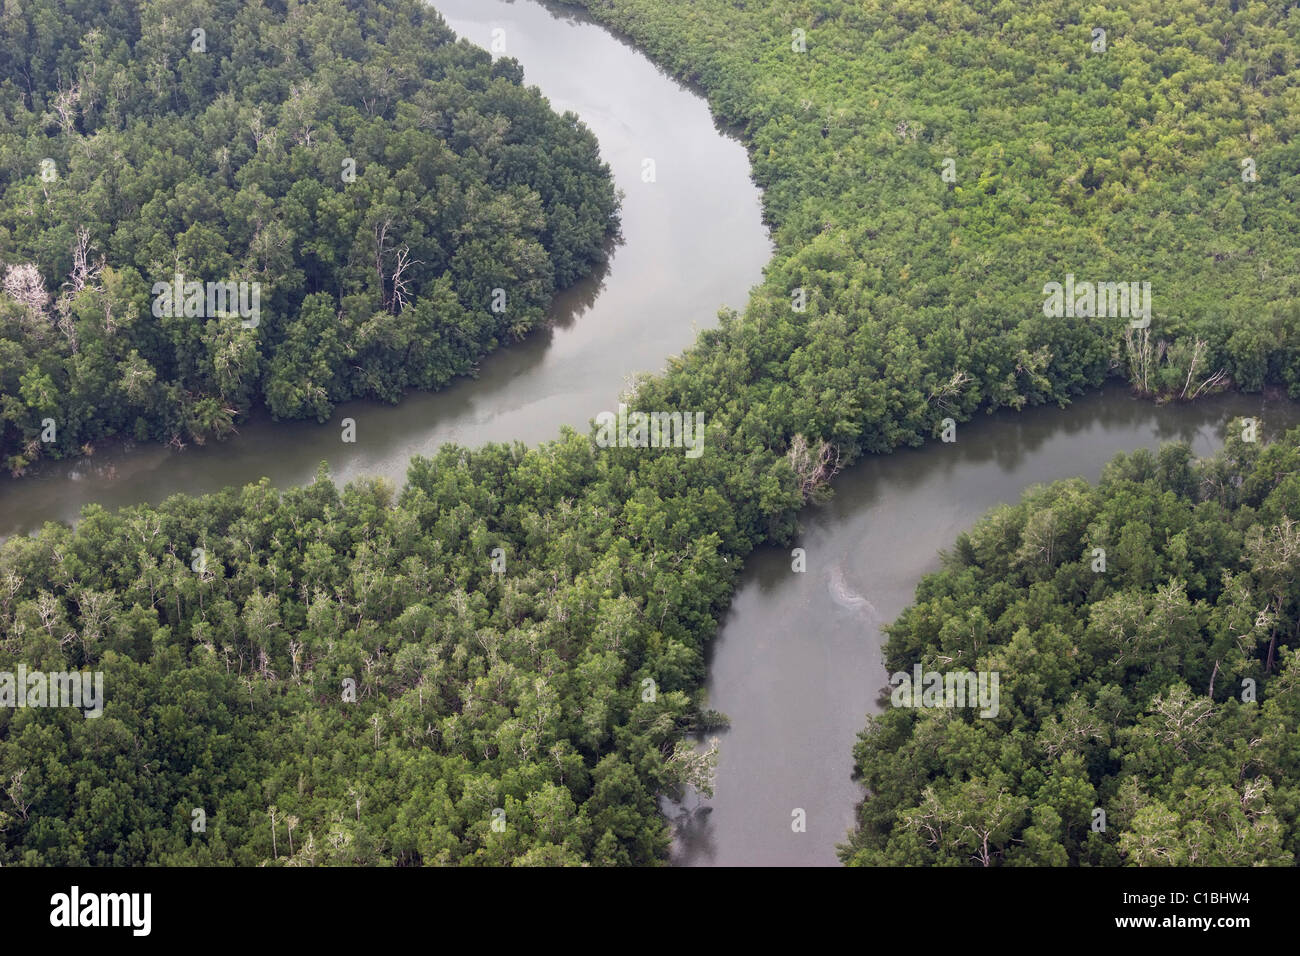 River Gabon Vue aérienne de la forêt arbres jungle Oxbow Bend Banque D'Images